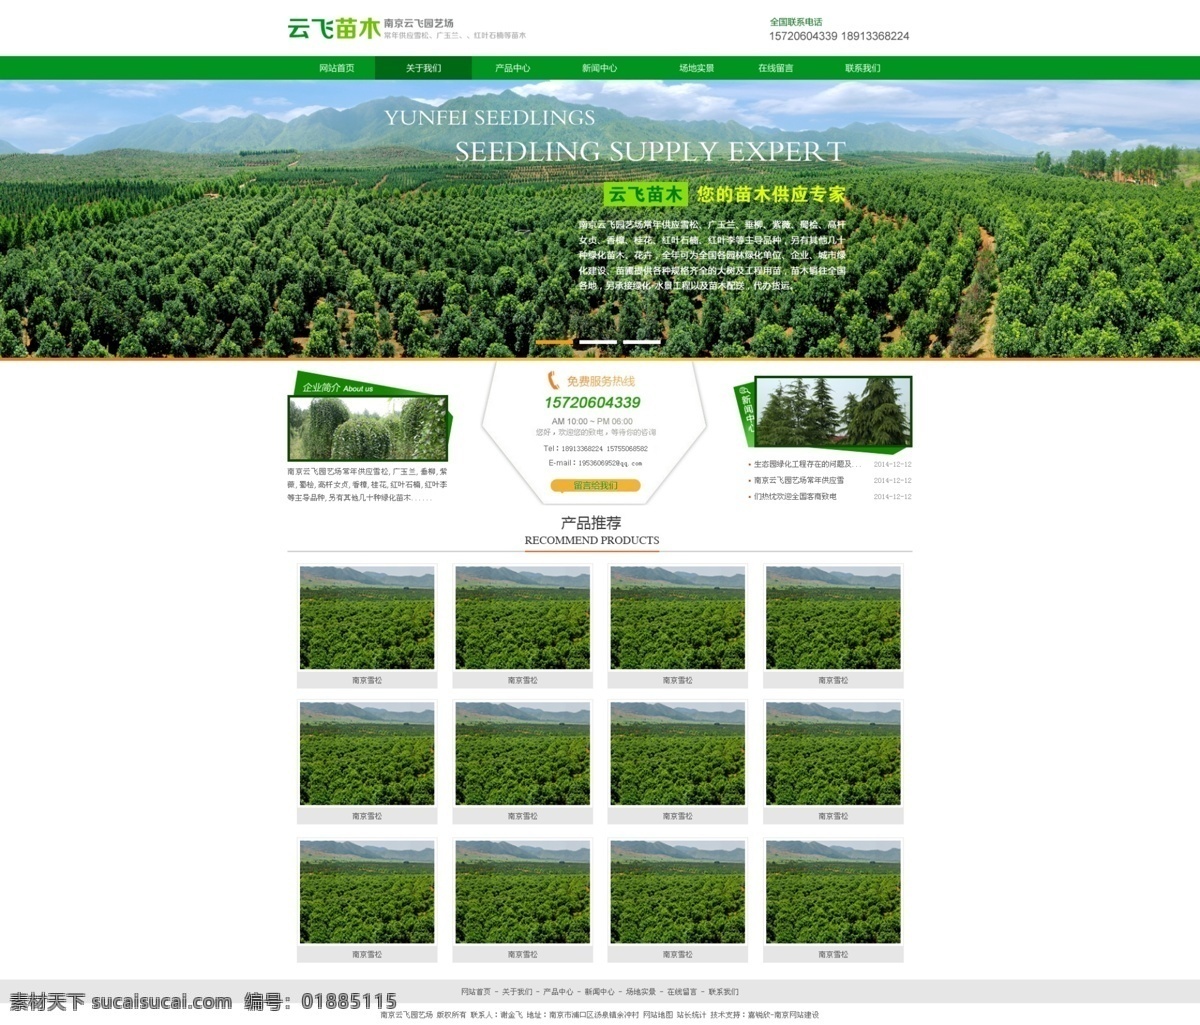 绿色农业 苗木 网站 模版 绿色 农业 网站模版 农业网站模版 苗木网站模版 绿色网站模版 web 界面设计 中文模板